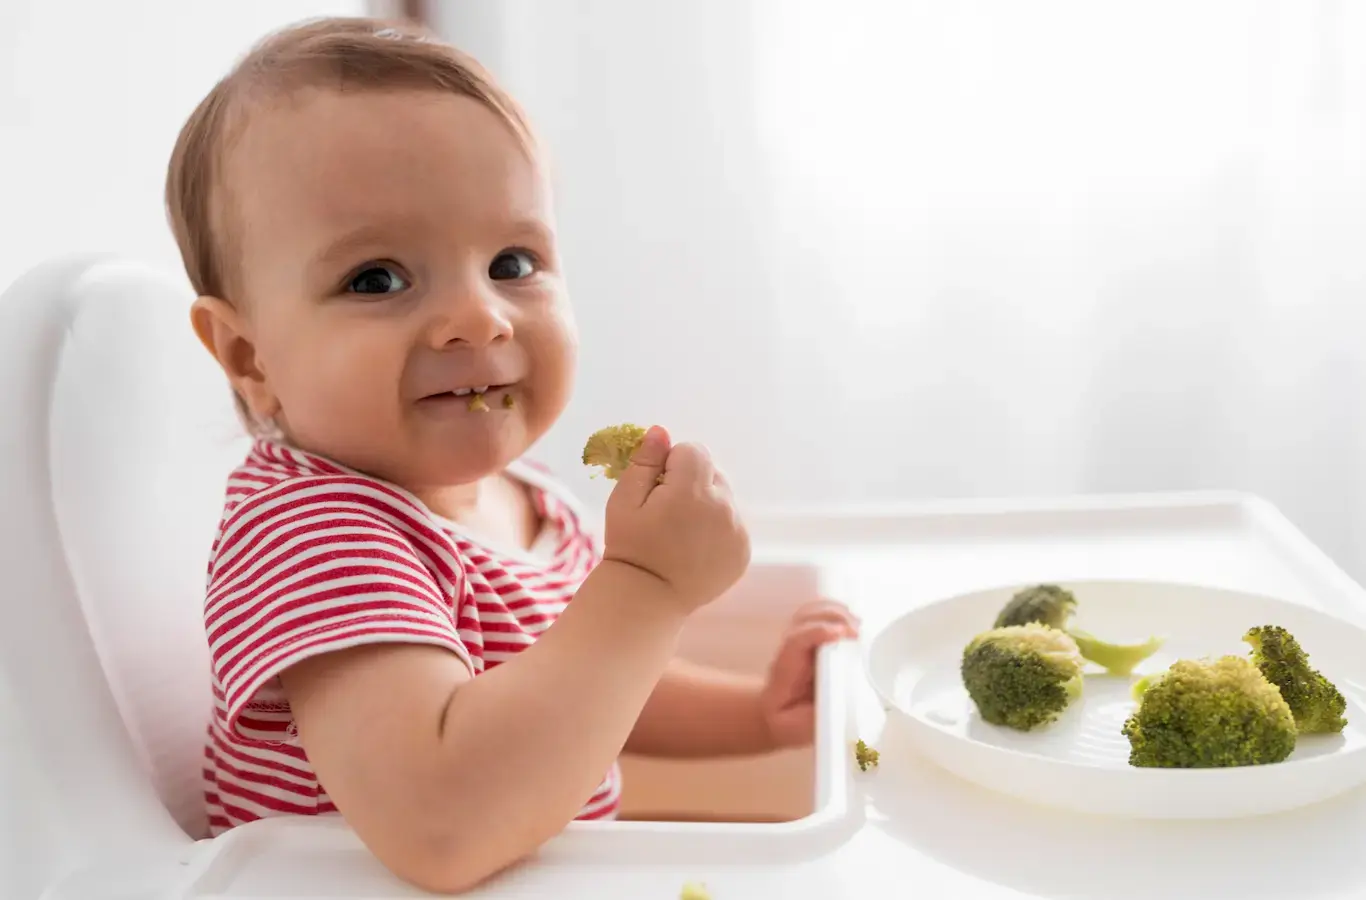 Bebê comendo brócolis para ilustrar conteúdo sobre nutricionista materno infantil